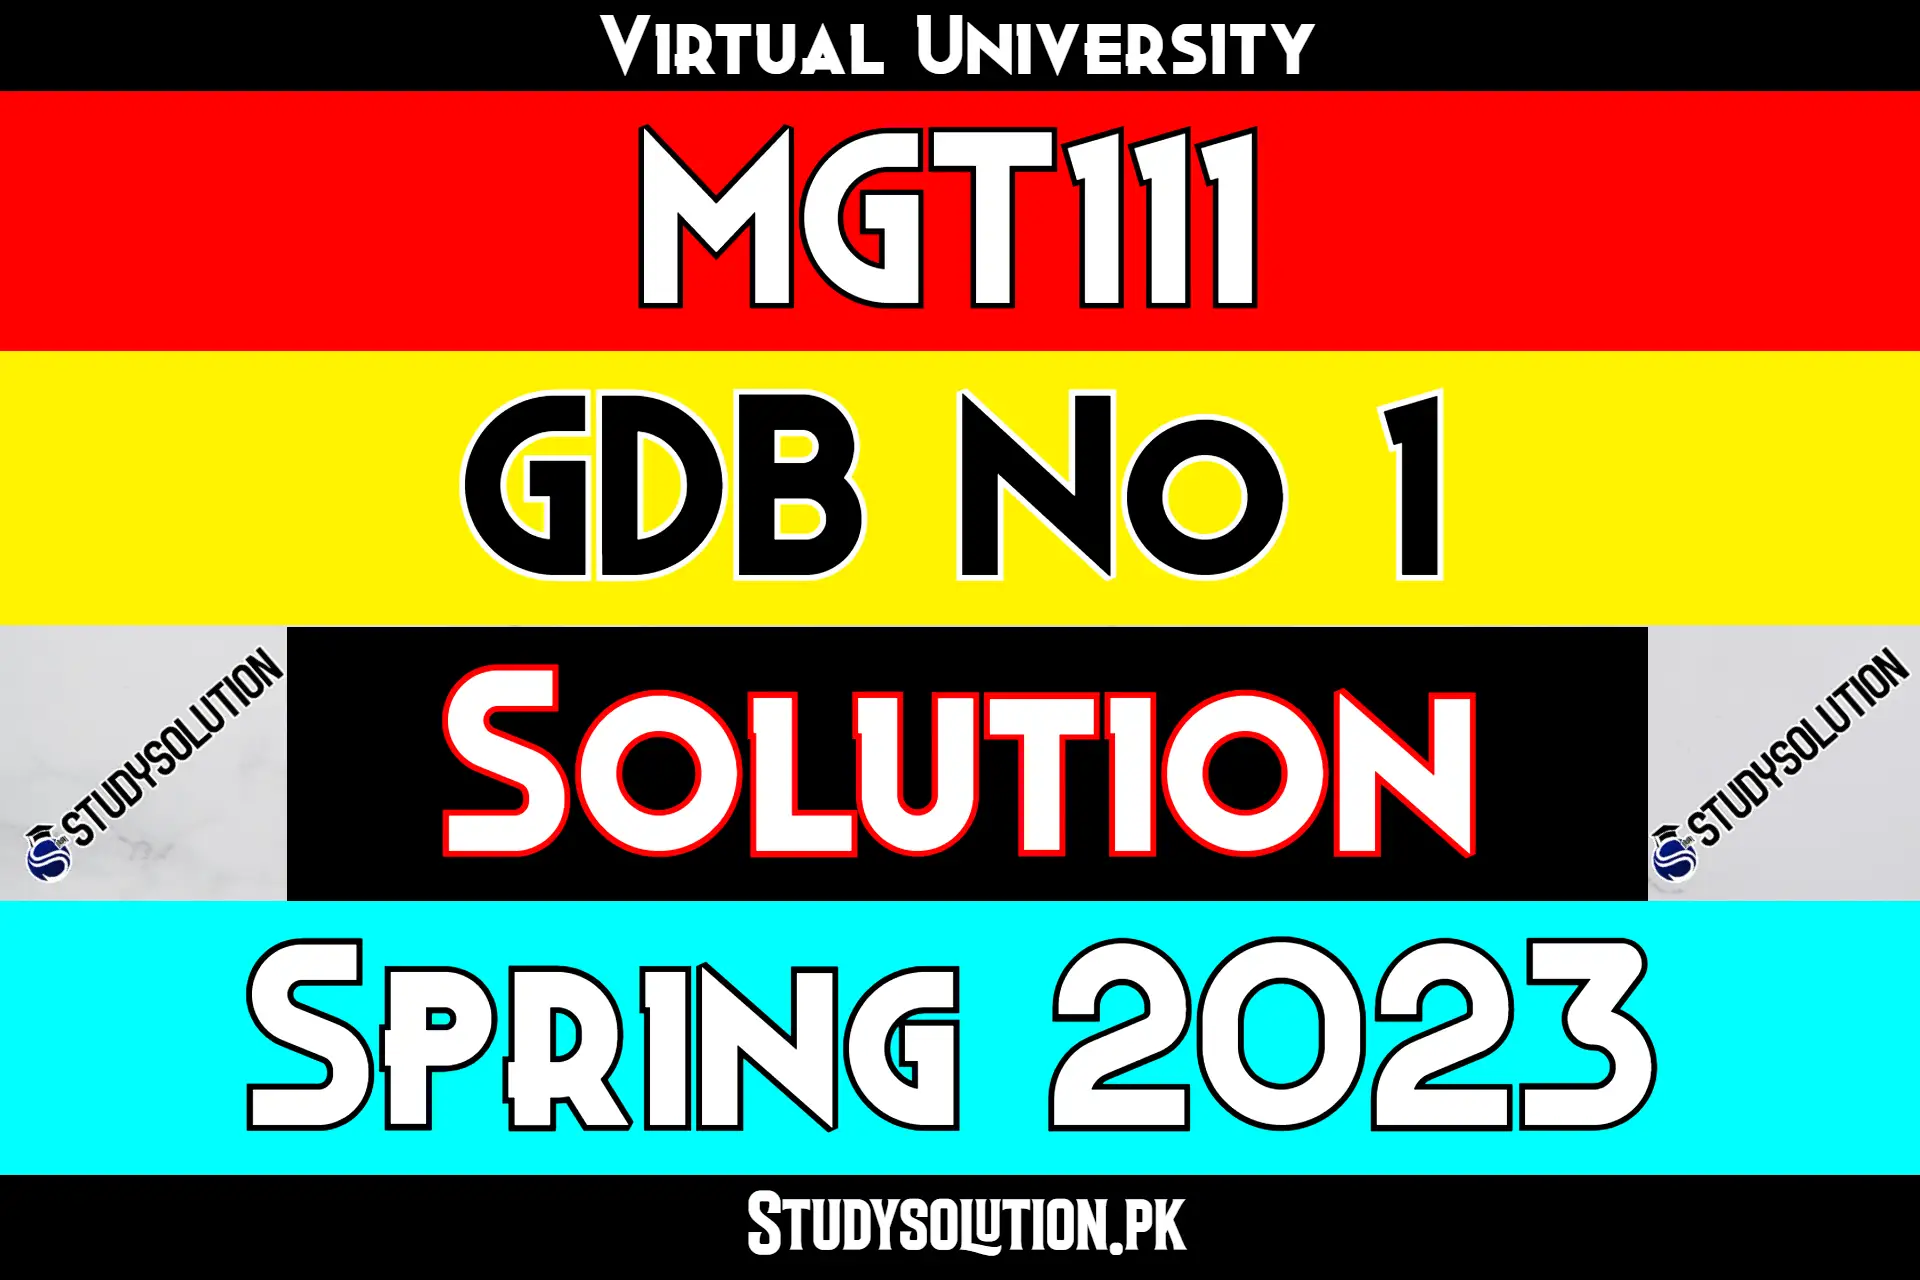 MGT111 GDB No 1 Solution Spring 2023